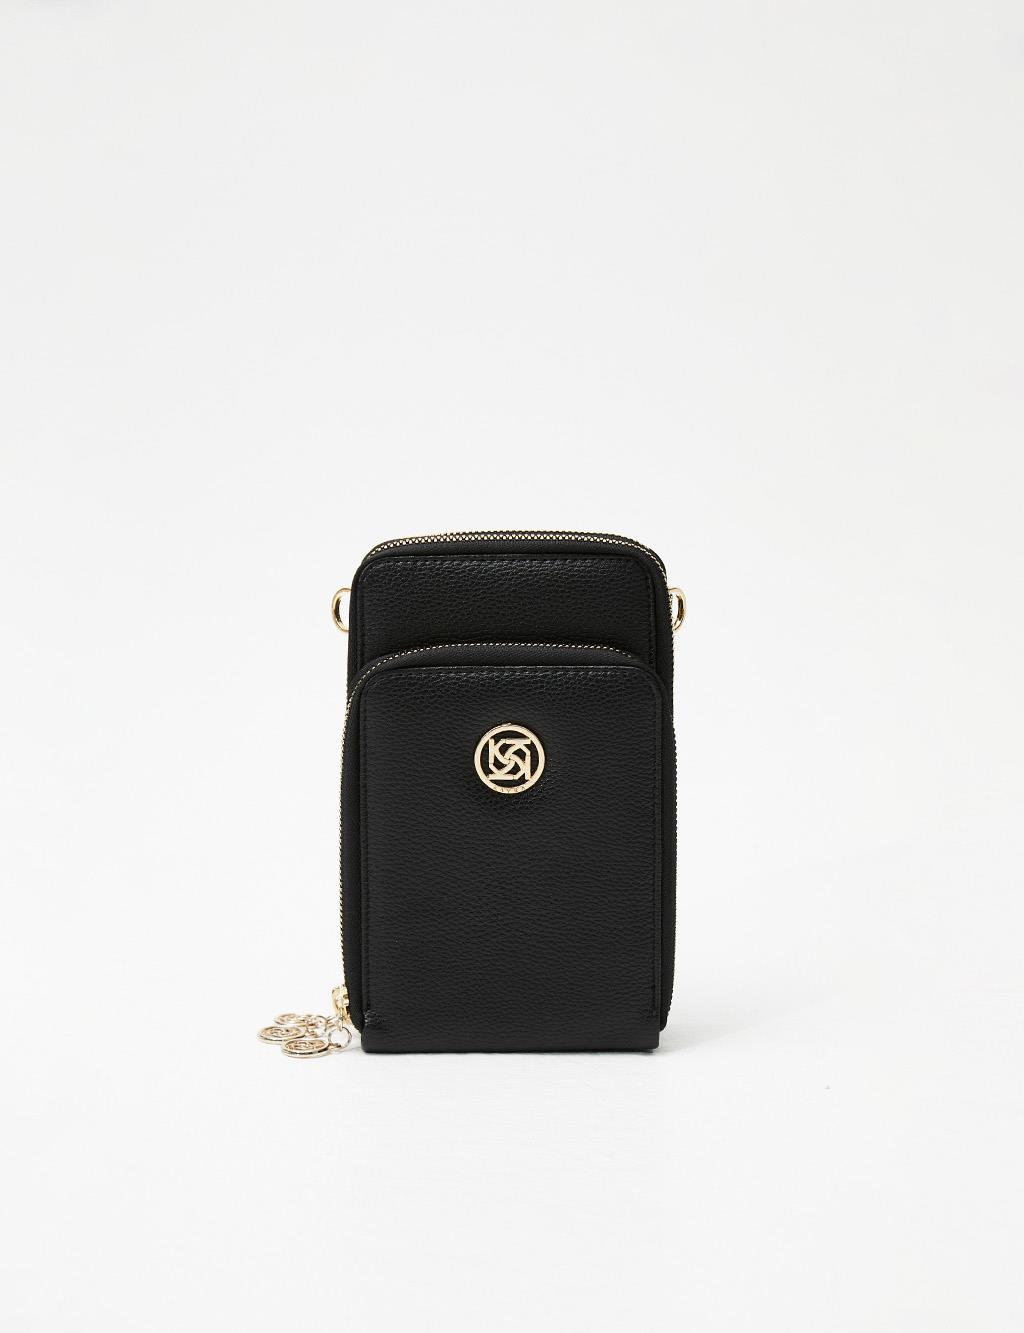 Three Compartment Bag Wallet Black